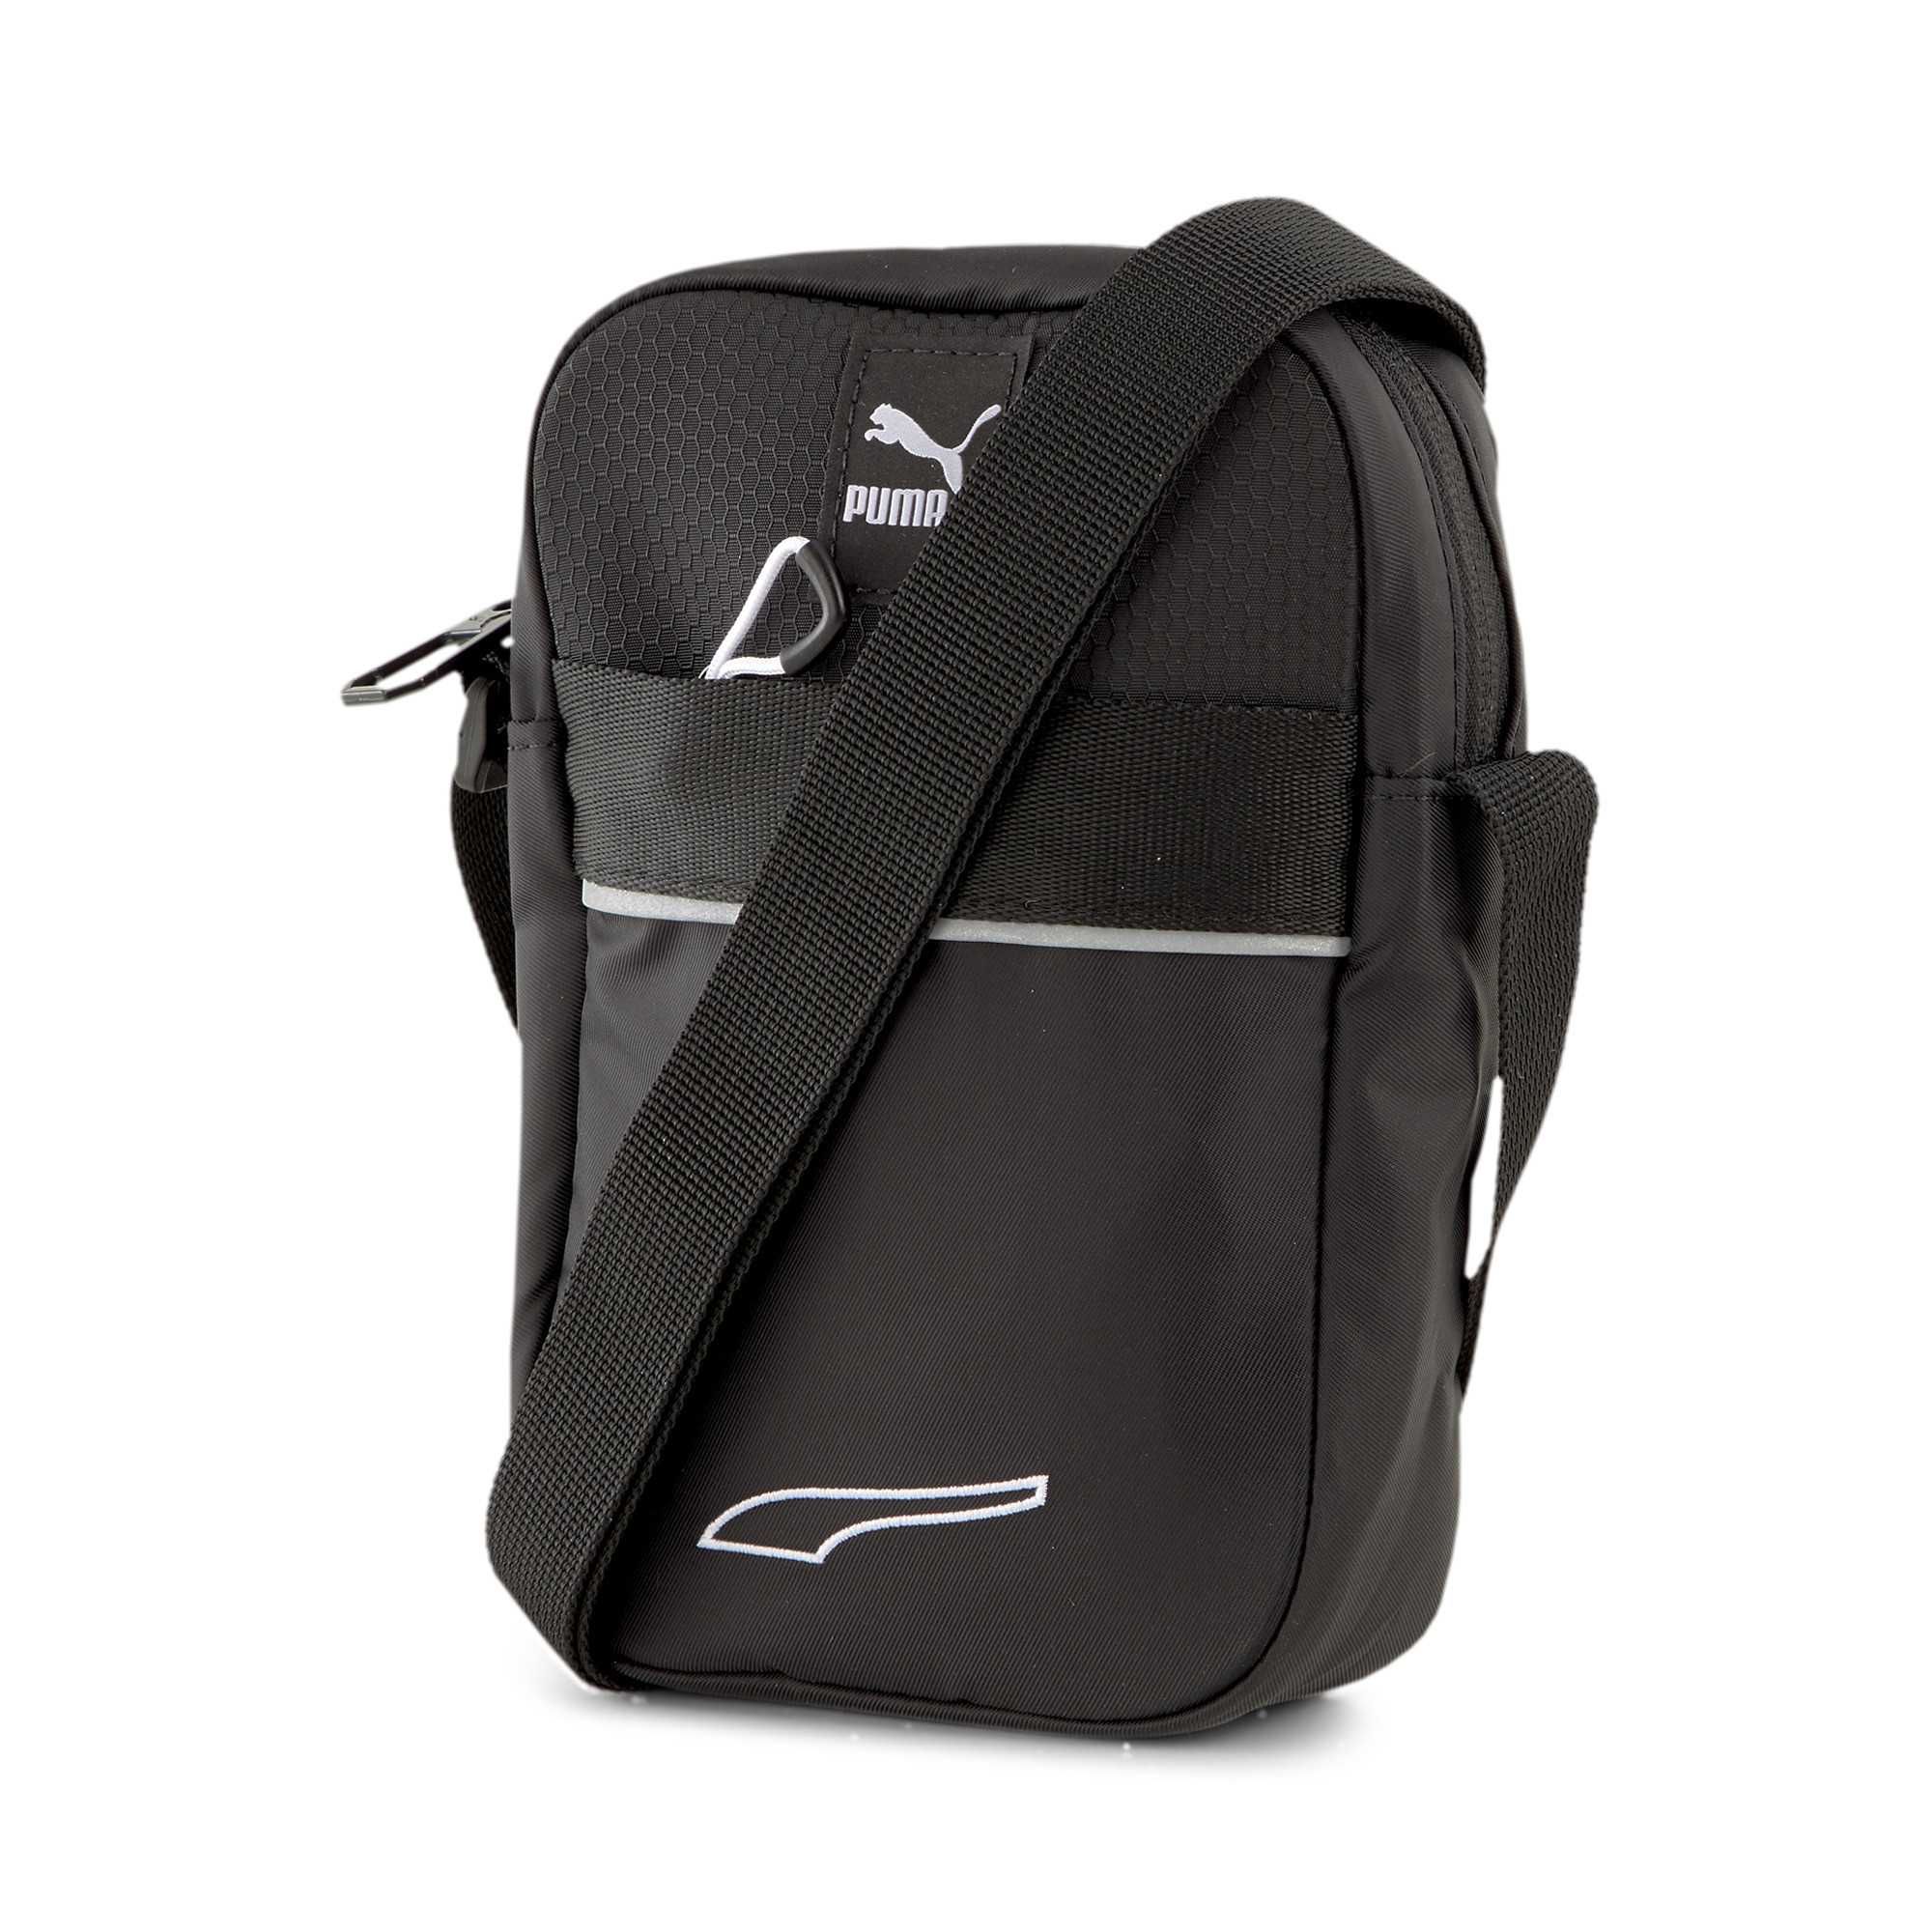 Новая оригинальная мини сумка месенджер Puma EvoPLUS Compact Portable